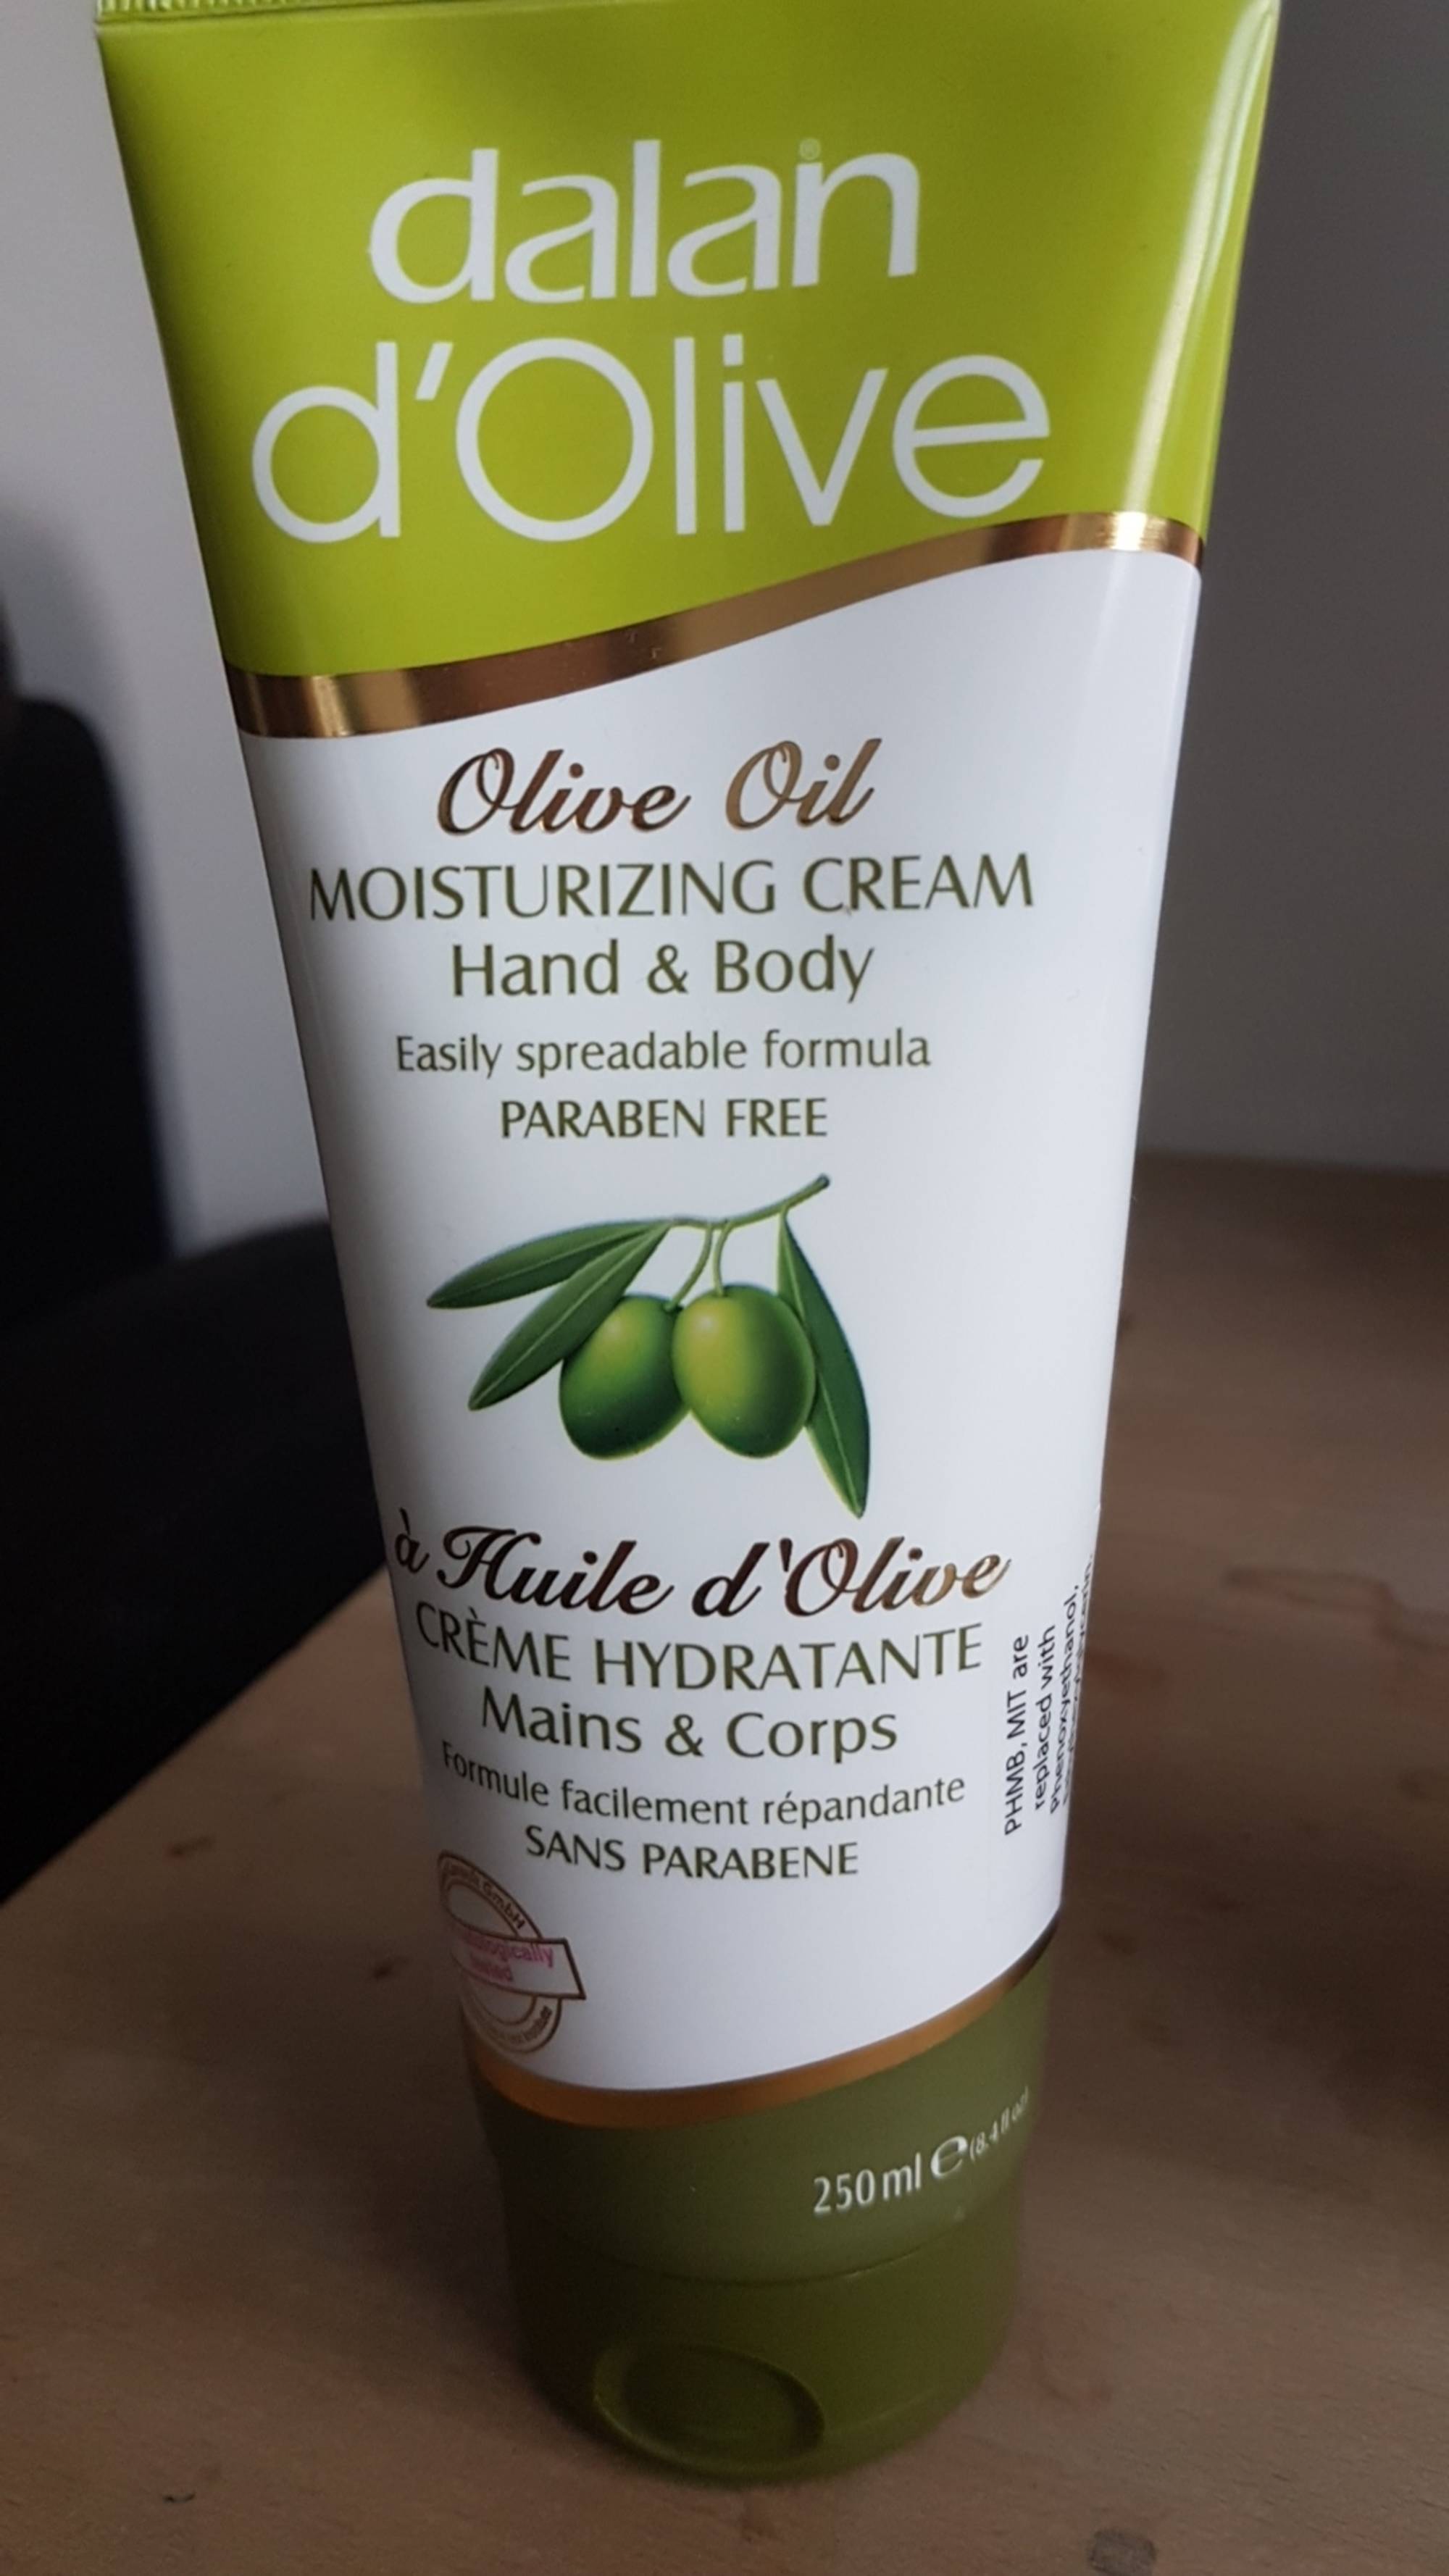 DALAN D'OLIVE - Crème hydratante mains & corps à l'huile d'olive